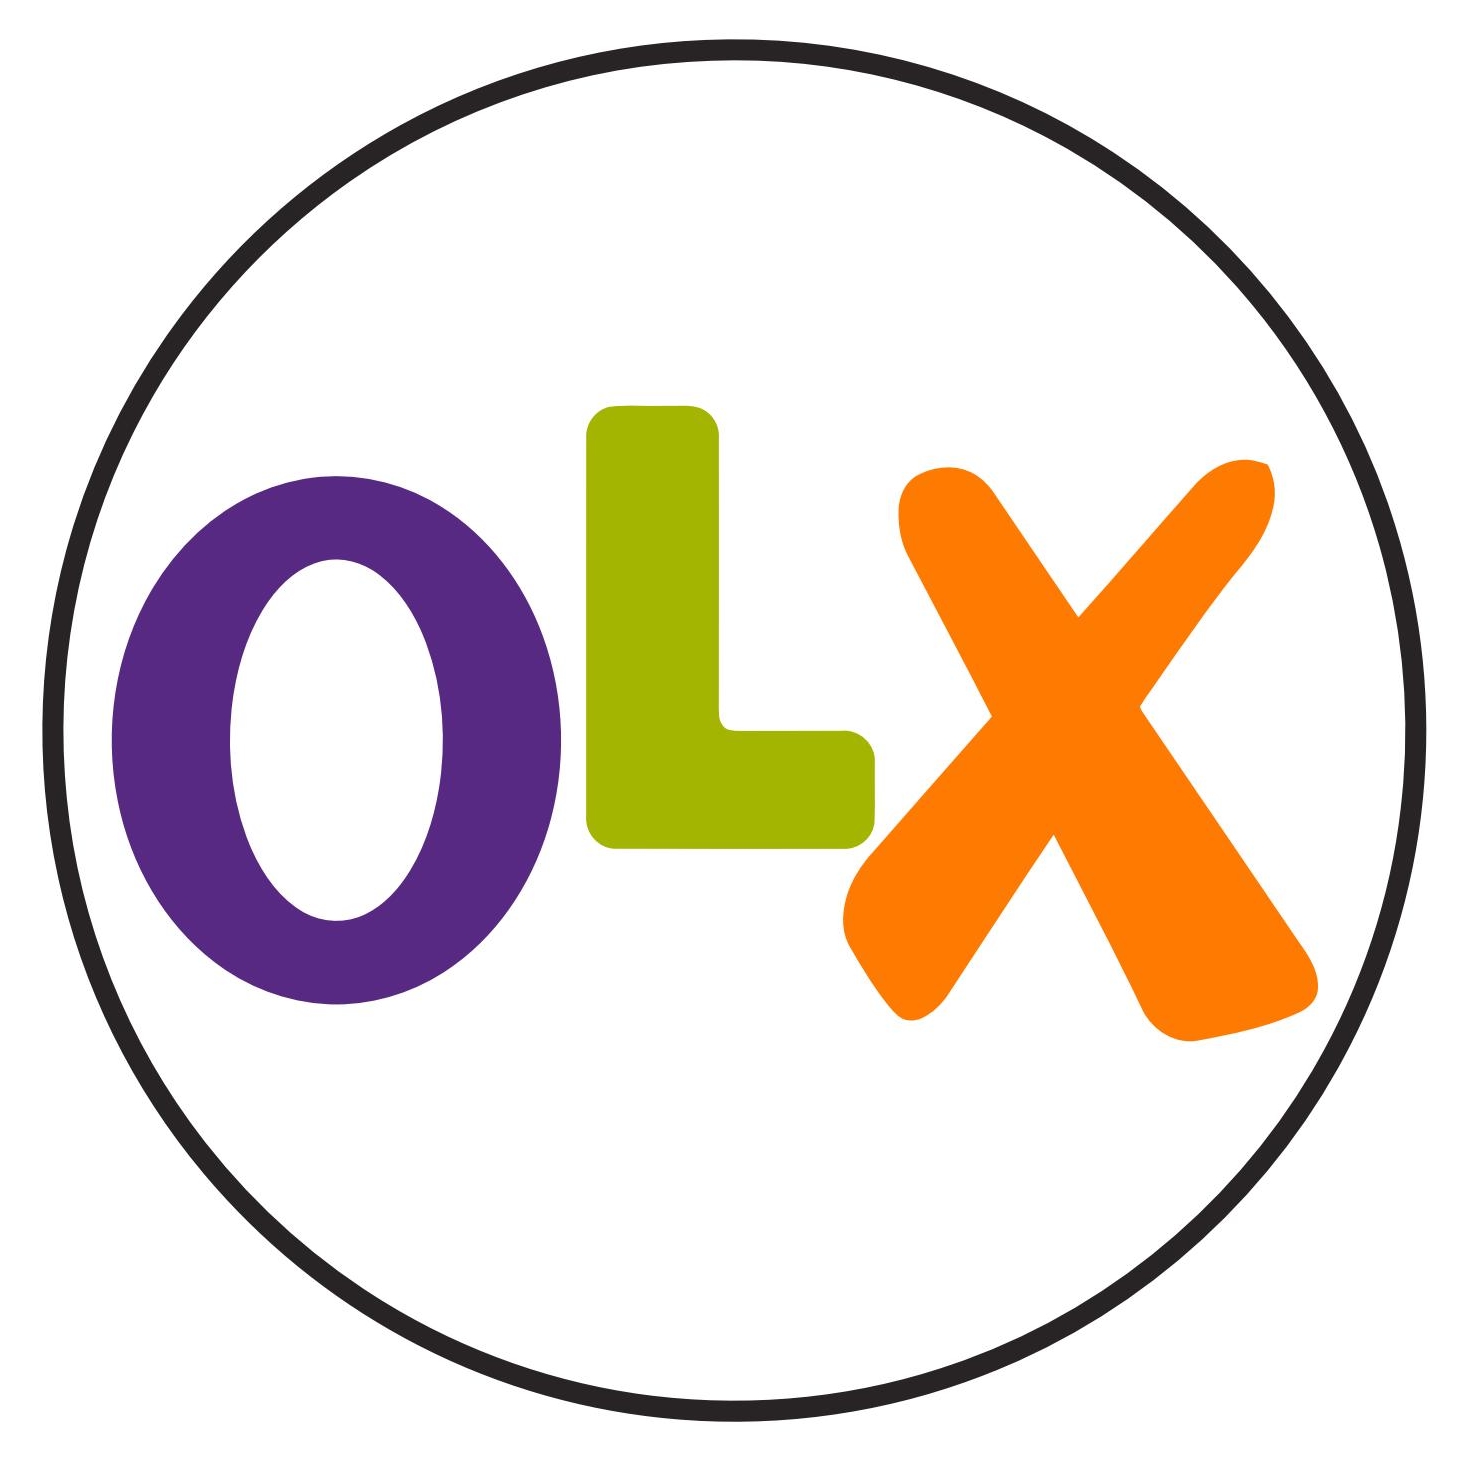 olx_logo